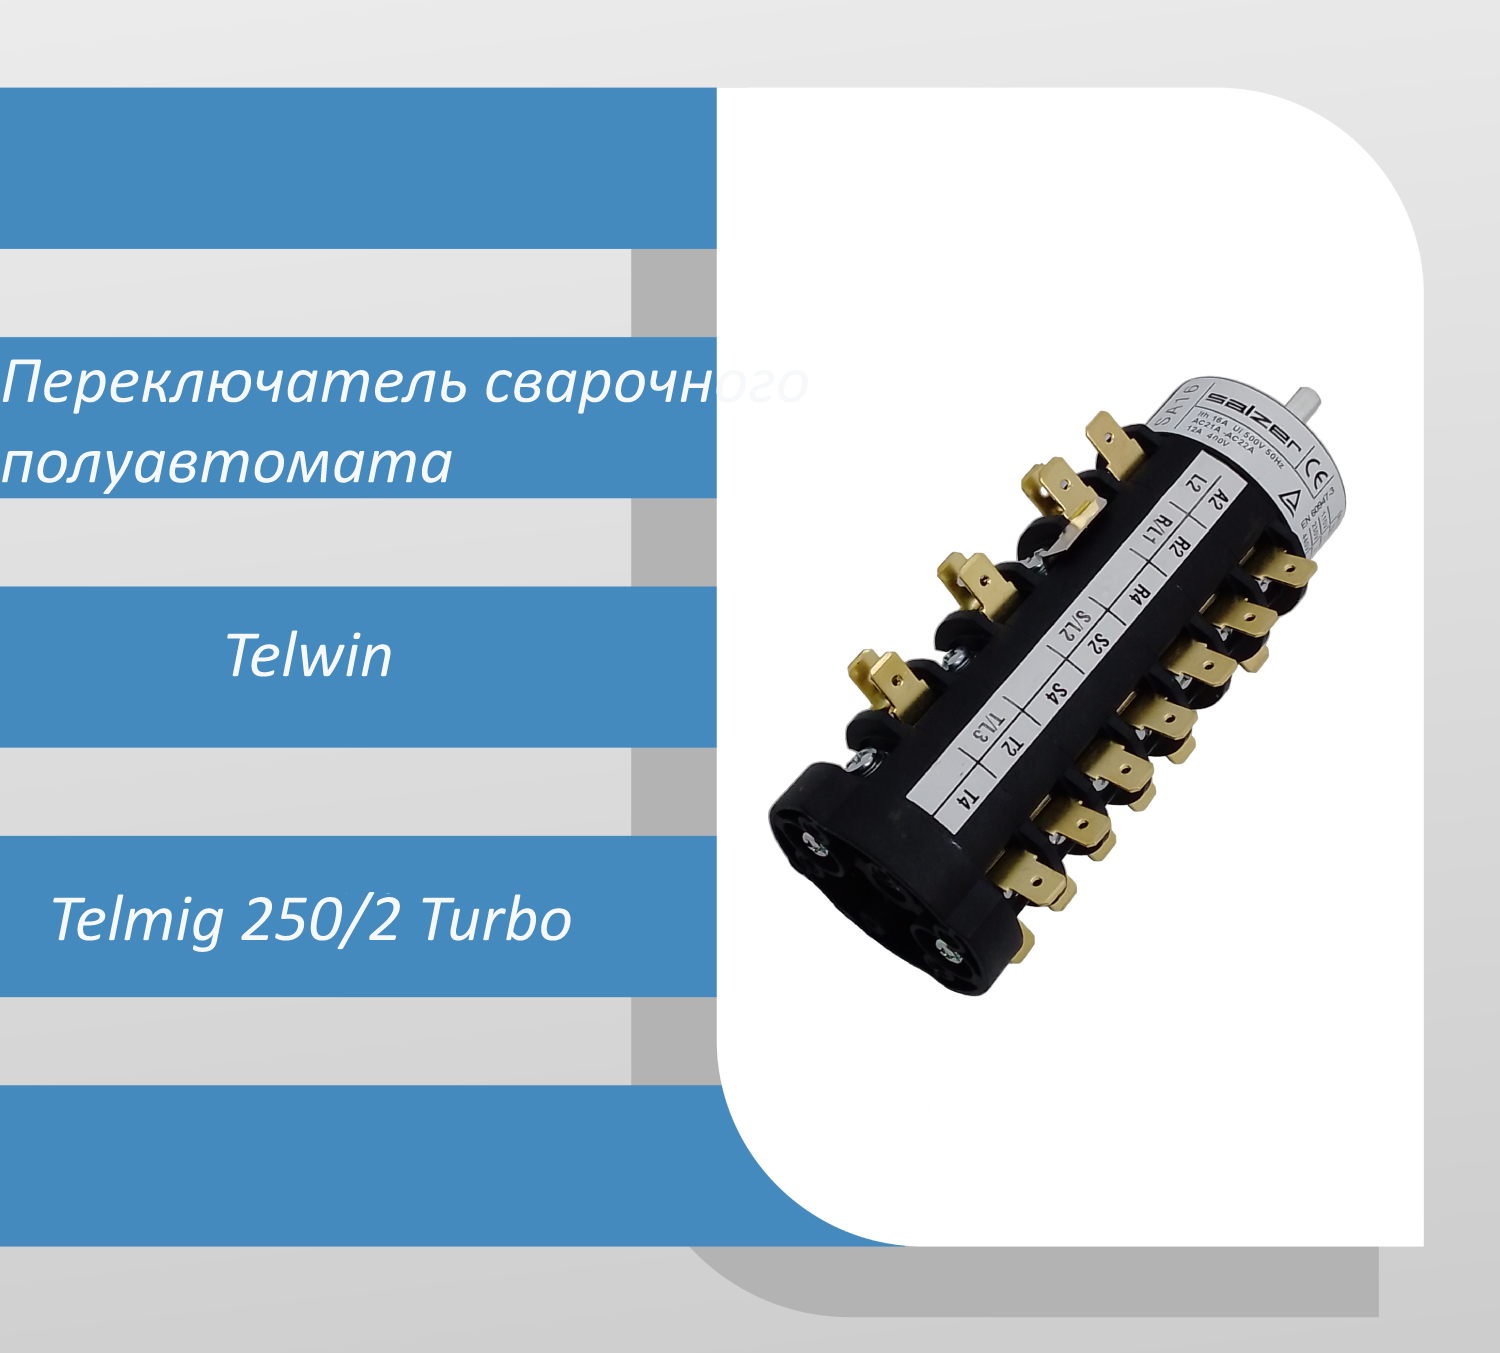 Переключатель напряжения сварочного полуавтомата Telwin Telmig 250/2 Turbo